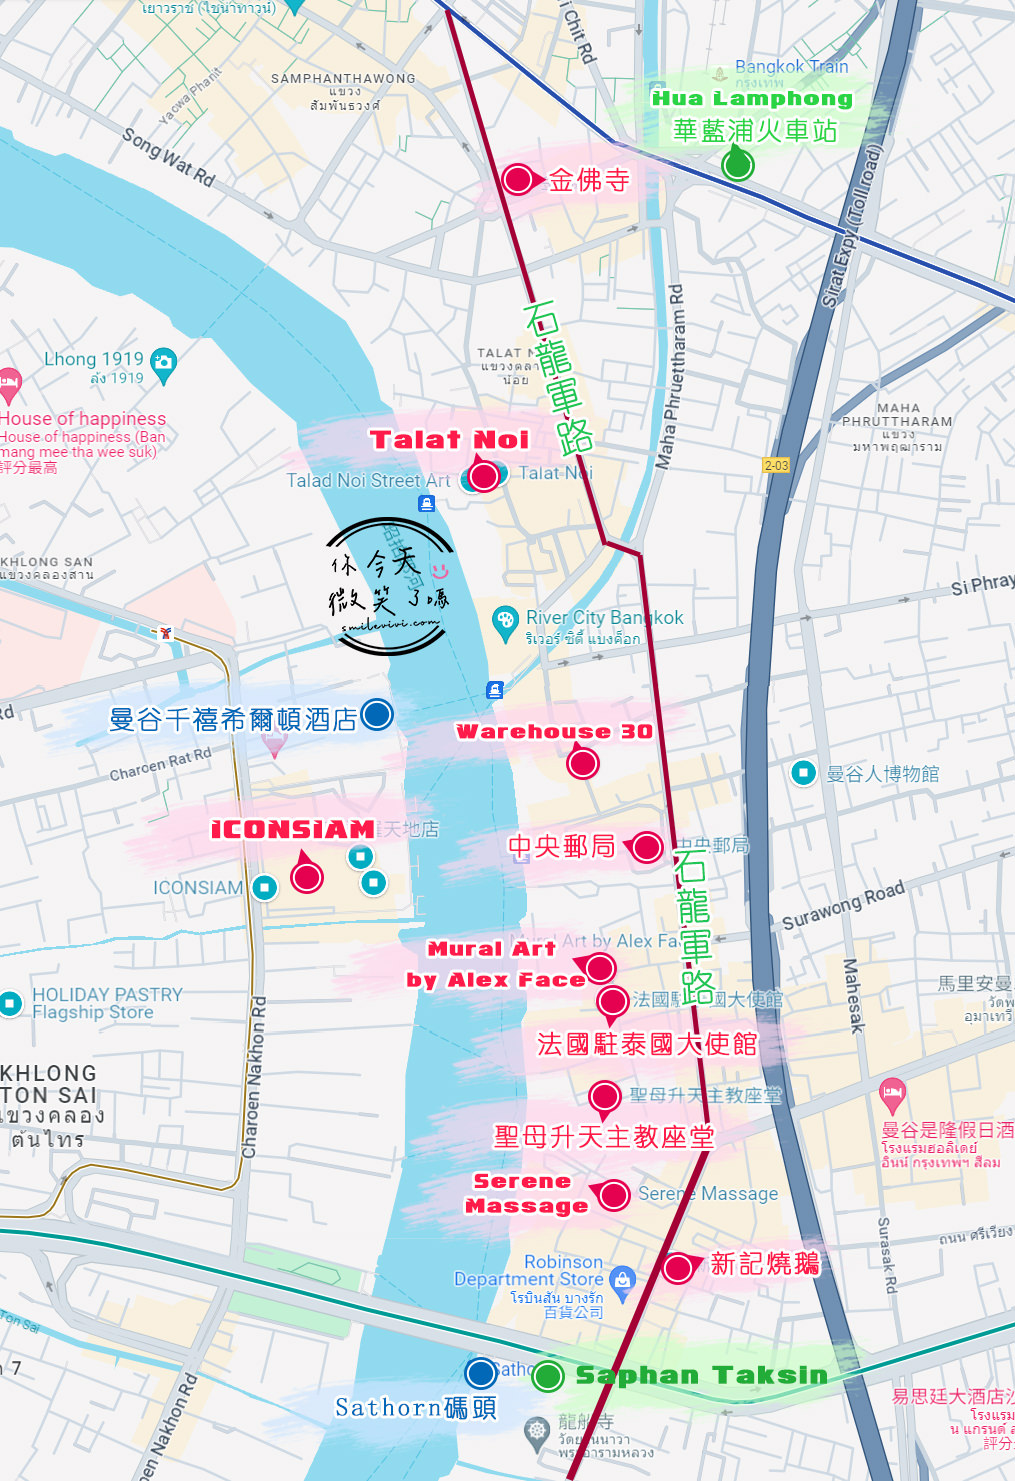 曼谷免費景點∥Warehouse 30，文青藝術展覽館︱二戰時期老倉庫，免費欣賞作品︱咖啡廳、藝廊、商店進駐，創作藝術空間︱鐵皮屋搭建，暗黑設計為主︱曼谷石龍軍路、曼谷景點 1 Charoen Krung map